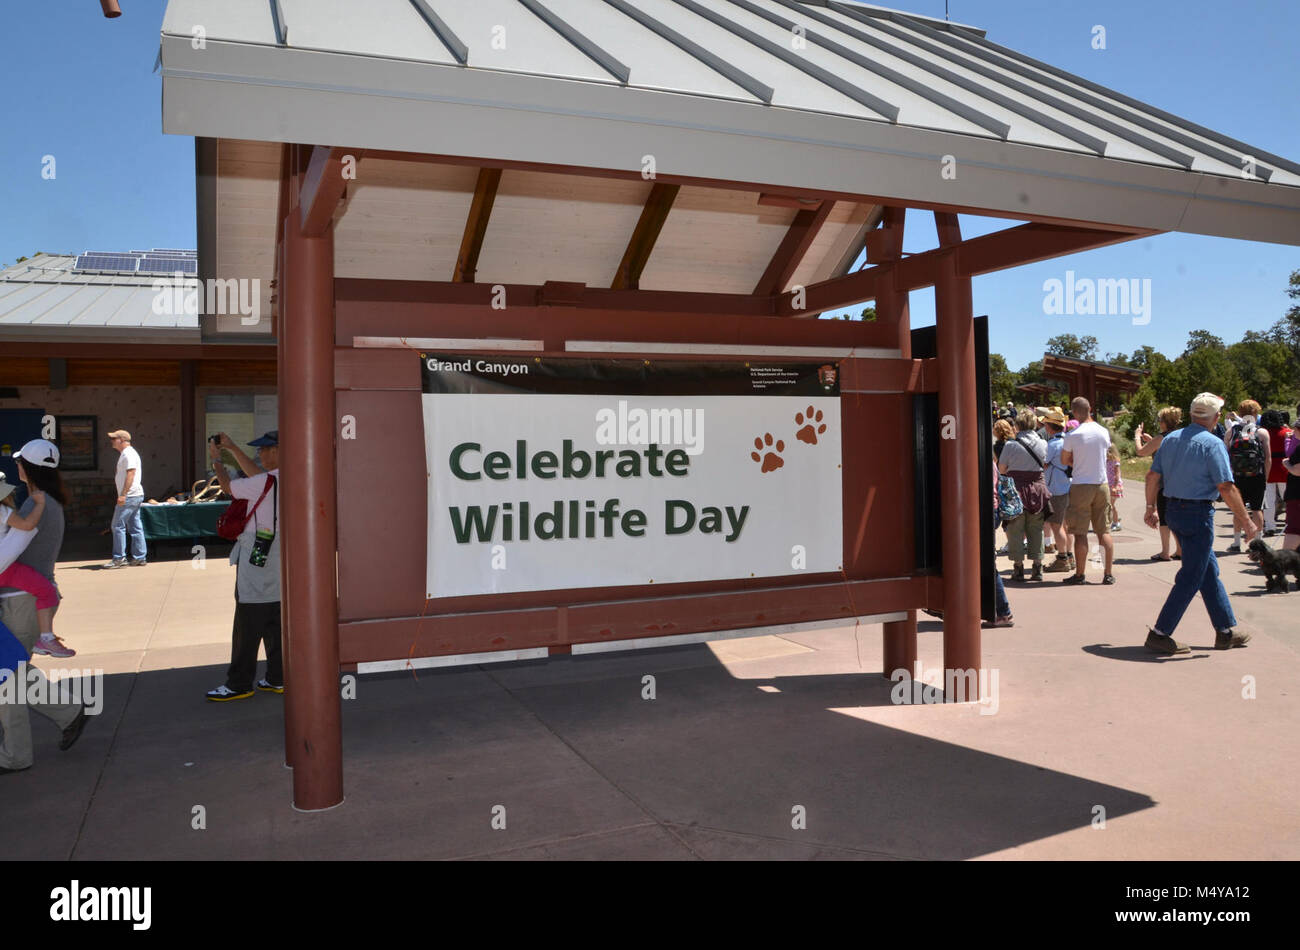 Vielen Dank an alle, die in der Wildnis Tag Feiern teilgenommen - Samstag, 19 Mai, 2012 am Grand Canyon Visitor Center. Besucher, die Erfahrenen familienfreundliche Aktivitäten im Laufe des Tages besucht.. . Rund 2.700 Besucher trat Förster und Mitarbeiter am Grand Canyon Visitor Centre, um mehr über die Tierwelt des Parks und gefährdeten Arten zu lernen. . . Feiern Wildlife Tag bietet Gelegenheit für Park Besucher über die reiche Tierwelt des Grand Canyon und der Wild lebende Tiere spezialisierte Biologen zu erfahren. Es ist möglich, durch die gemeinsamen Anstrengungen der Nat gemacht Stockfoto